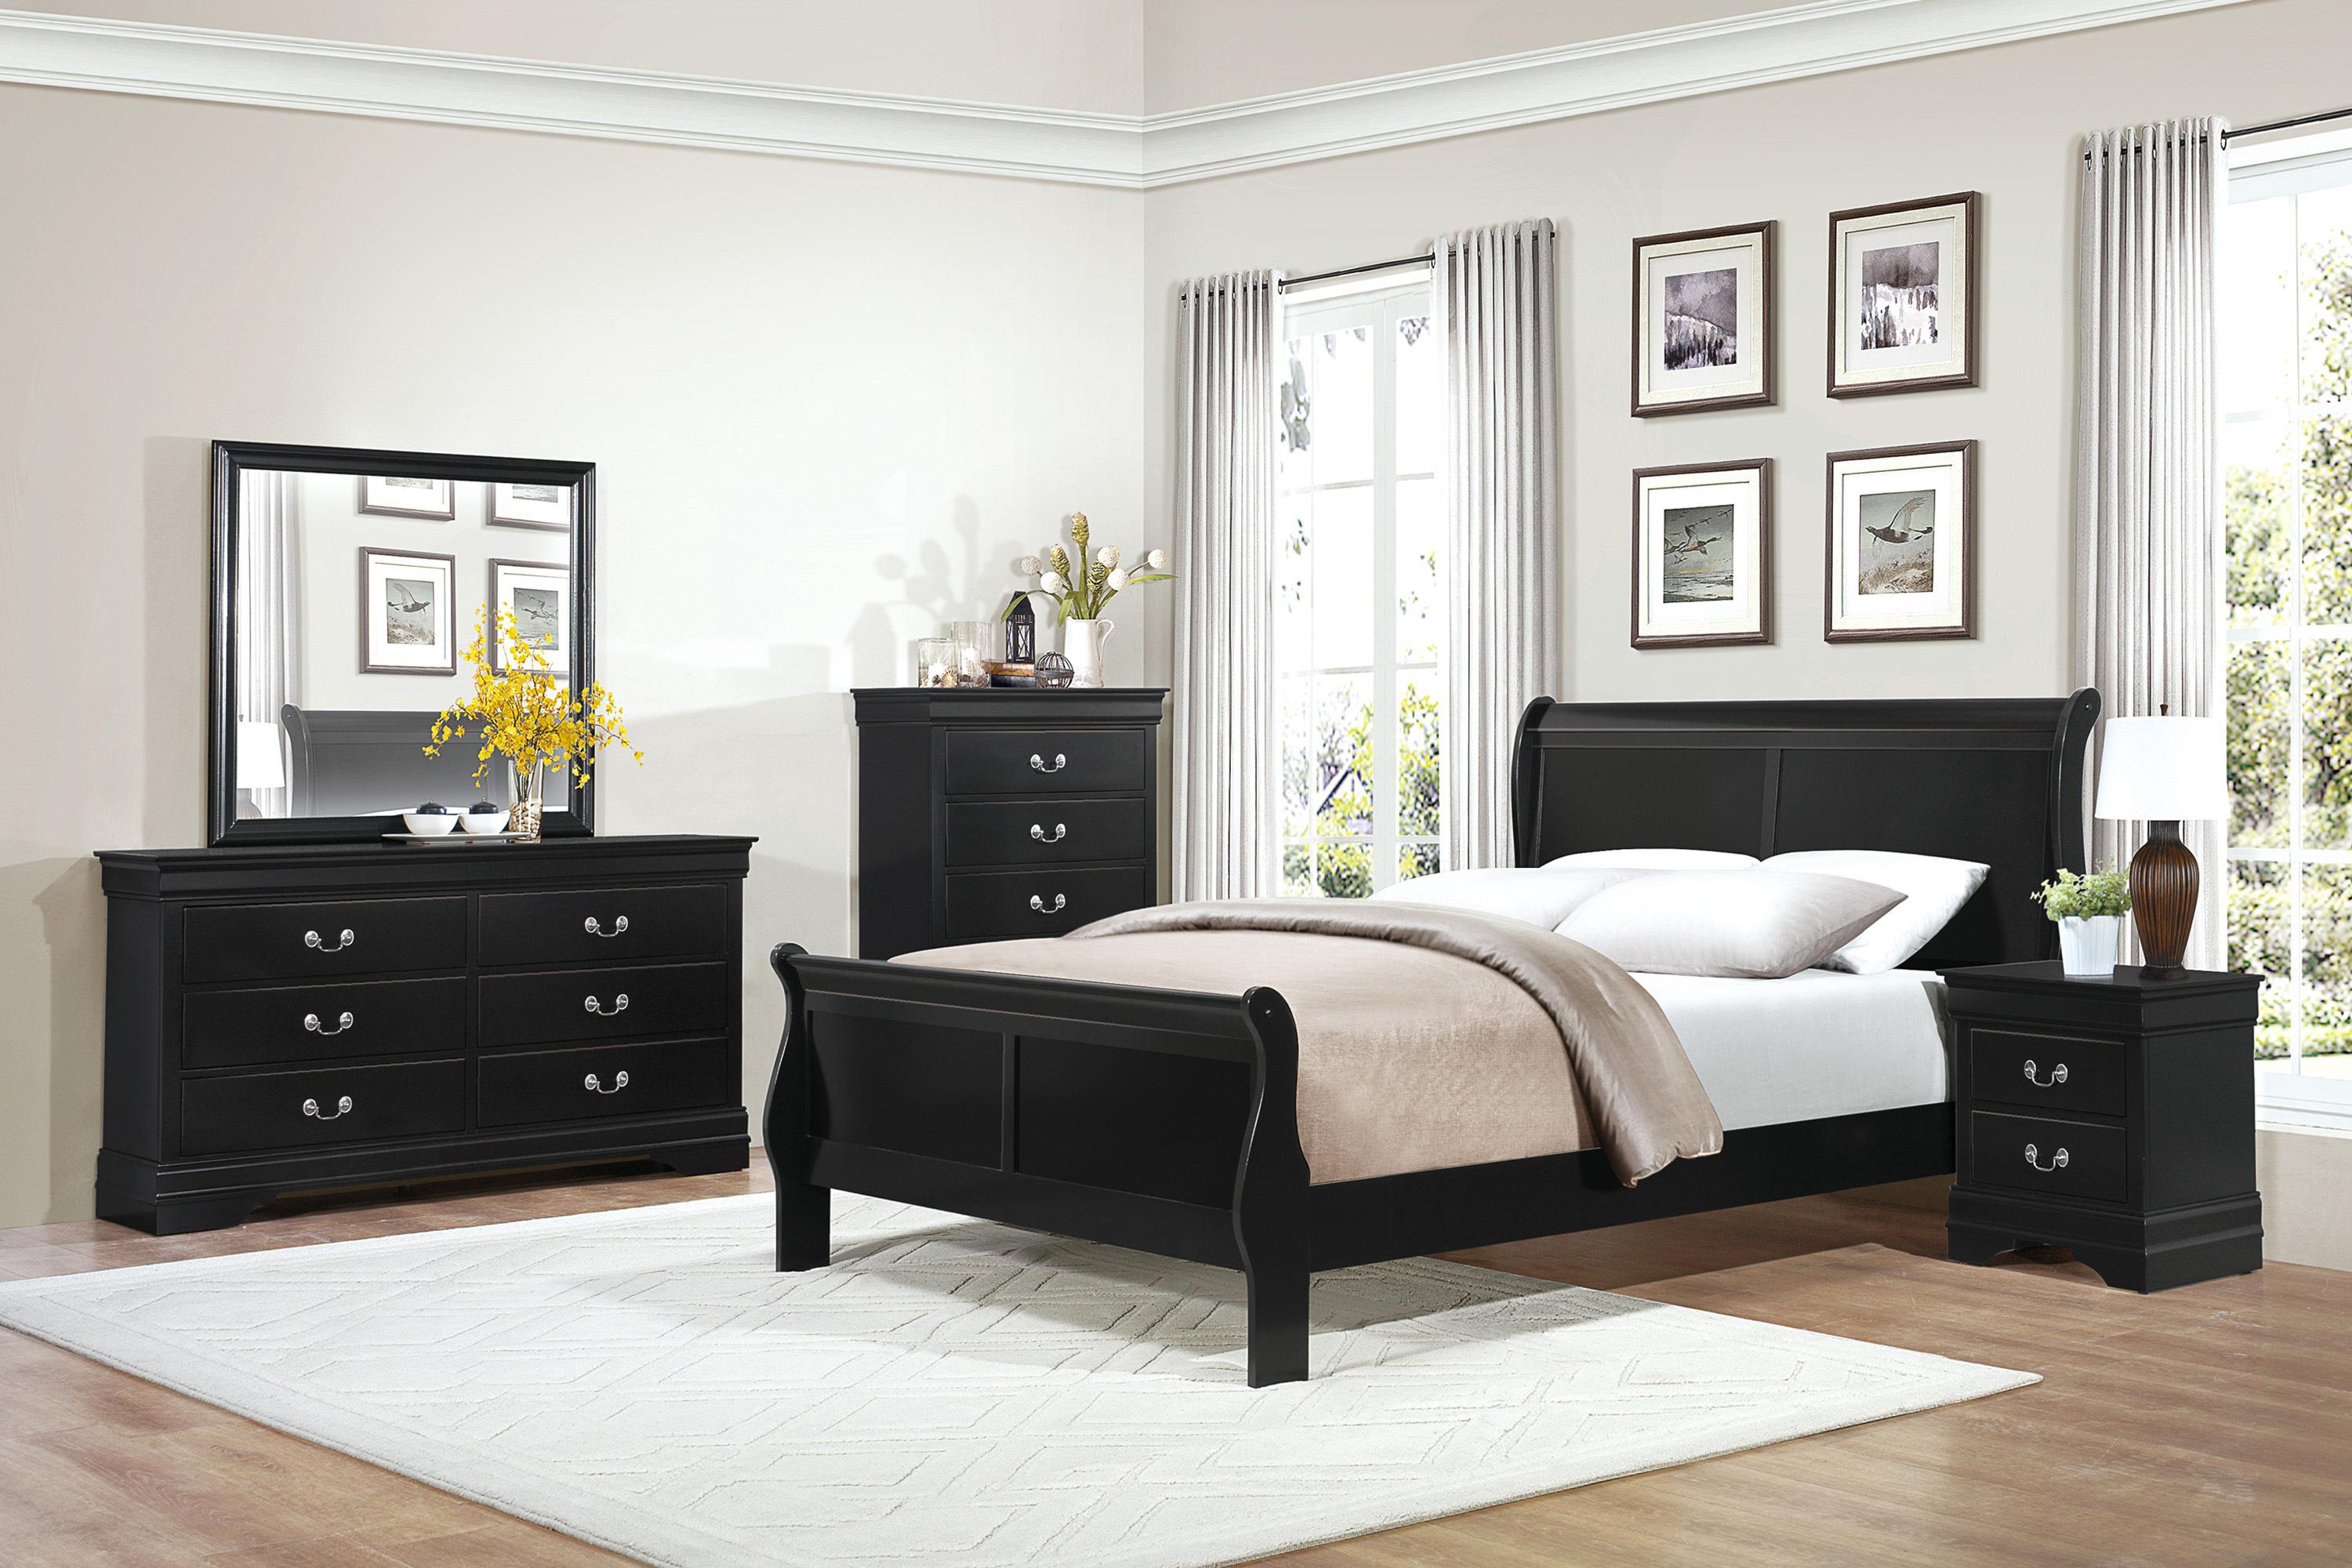 

    
Traditional Black Wood CAL Bedroom Set 6pcs Homelegance 2147KBK-1CK* Mayville
